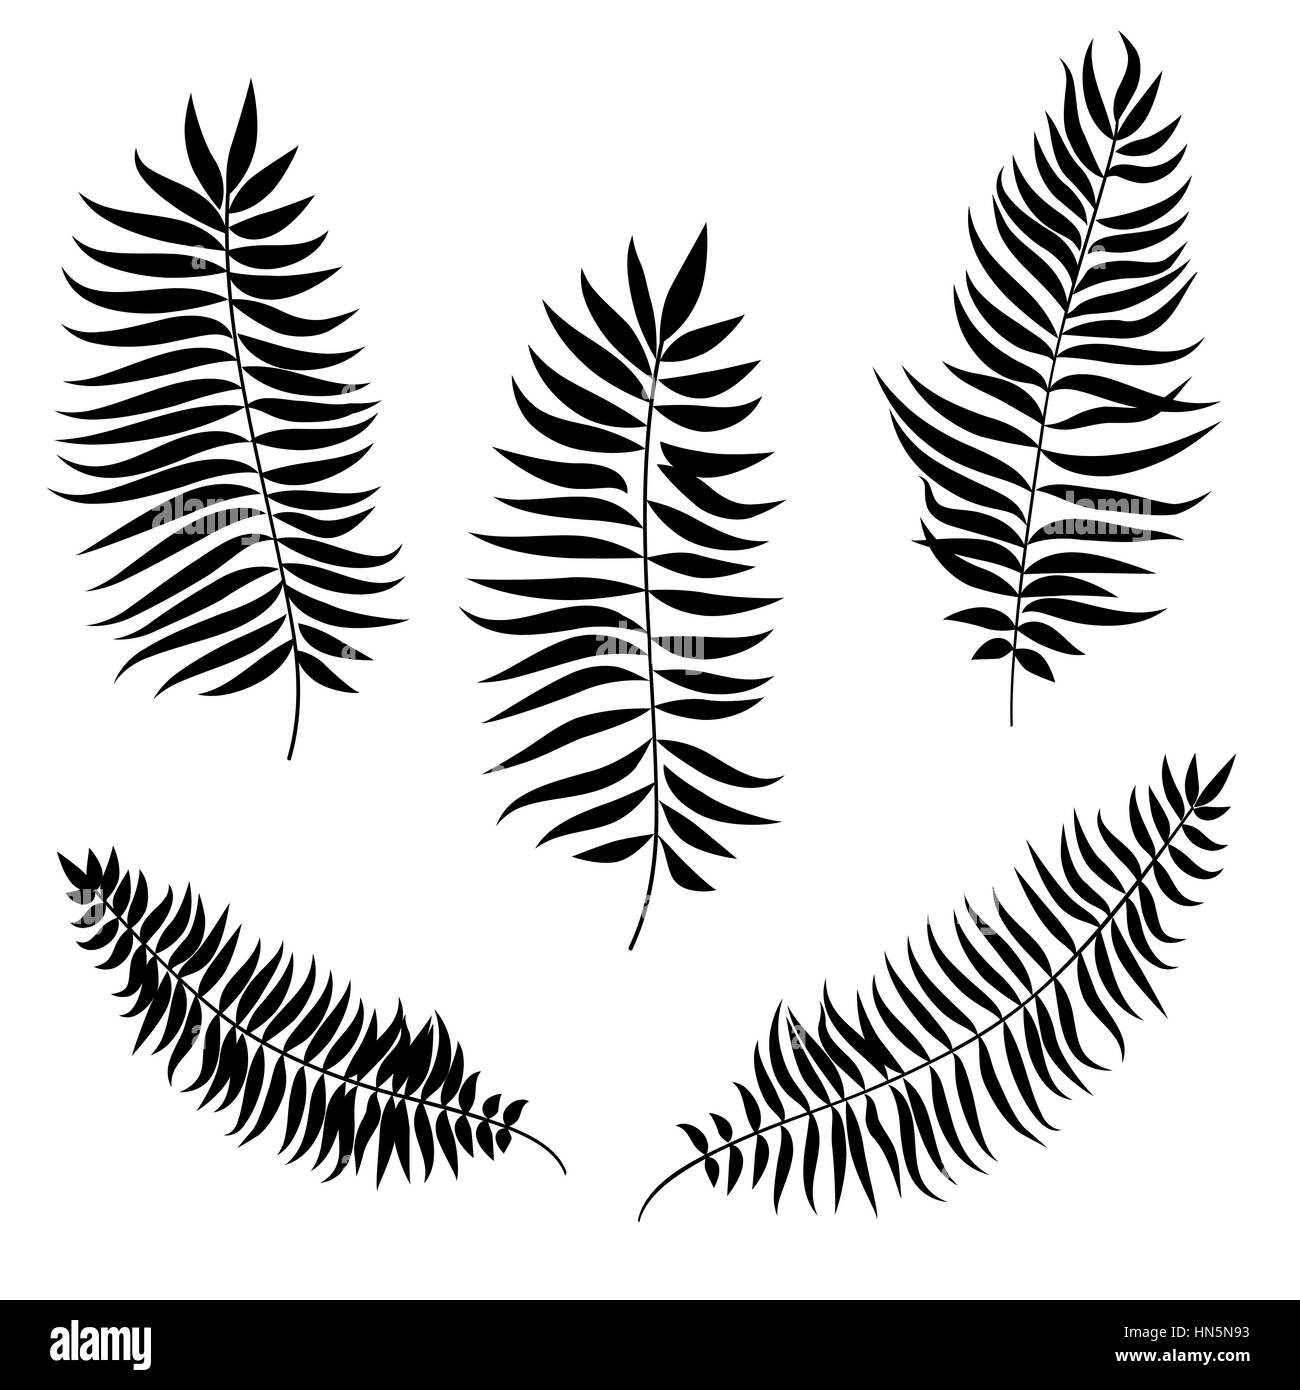 Jeu de feuilles. La silhouette de la feuille de palmier collection vector Illustration de Vecteur